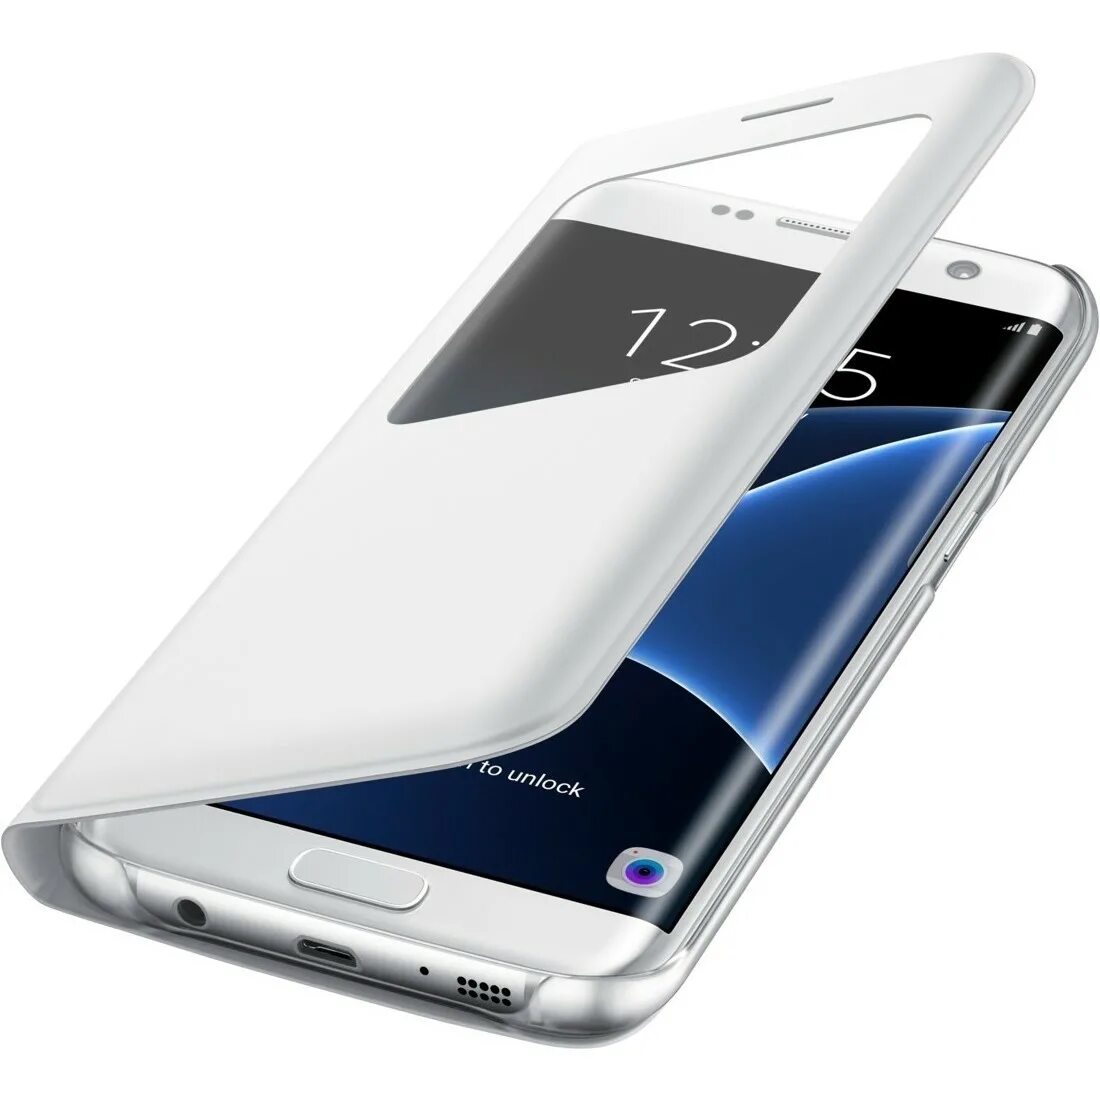 Самсунг галакси s7 Edge. Чехол на самсунг s7 Edge. Samsung Galaxy 7 Edge. Samsung Galaxy s7/s7 Edge.